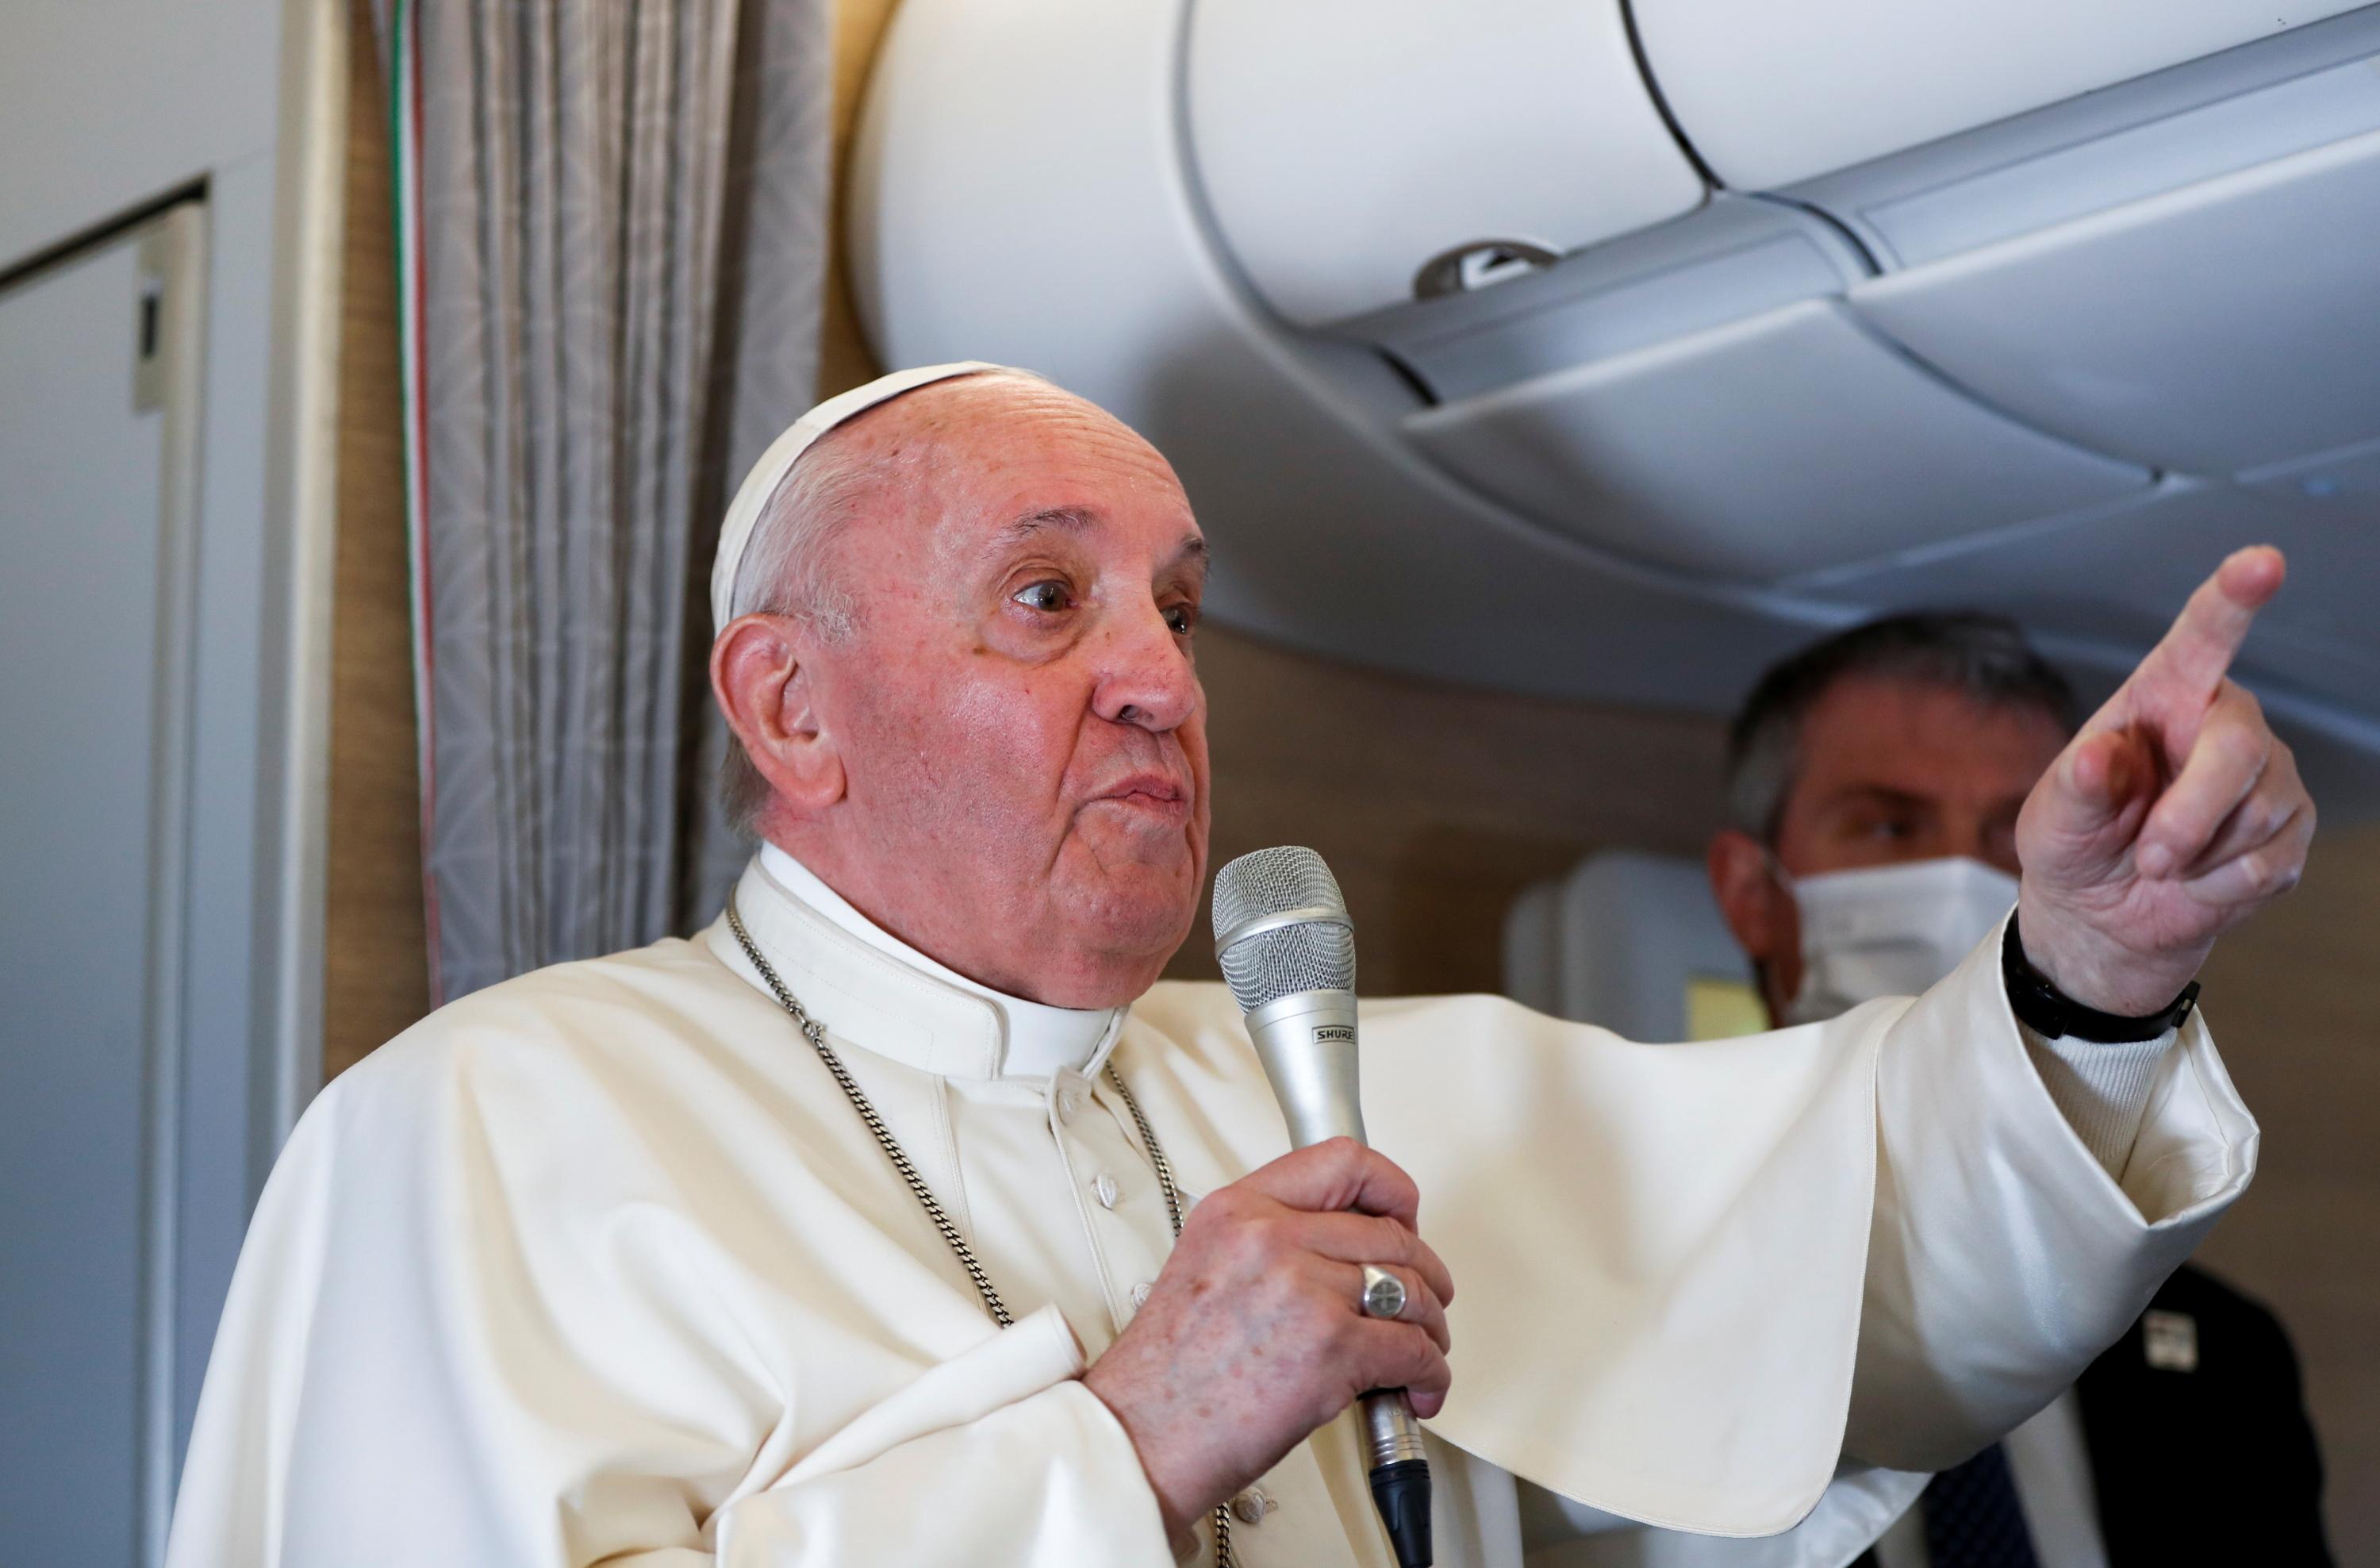 Femmes Sante Islam Ce Qu A Dit Le Pape Francois Dans L Avion A Son Retour D Irak